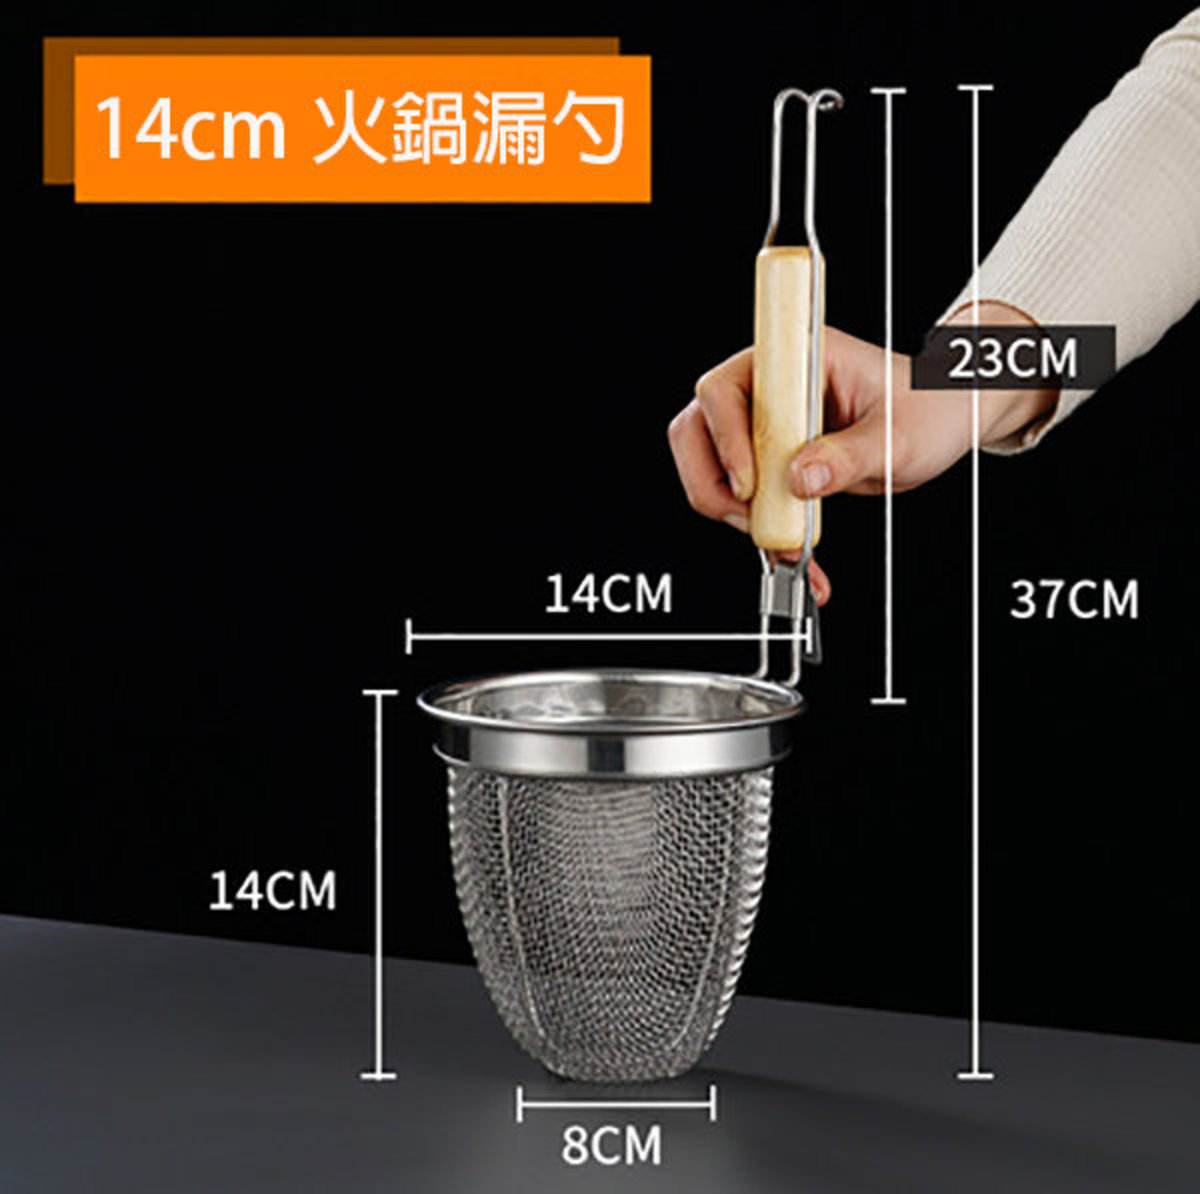 14cm stainless steel hot pot filter colander